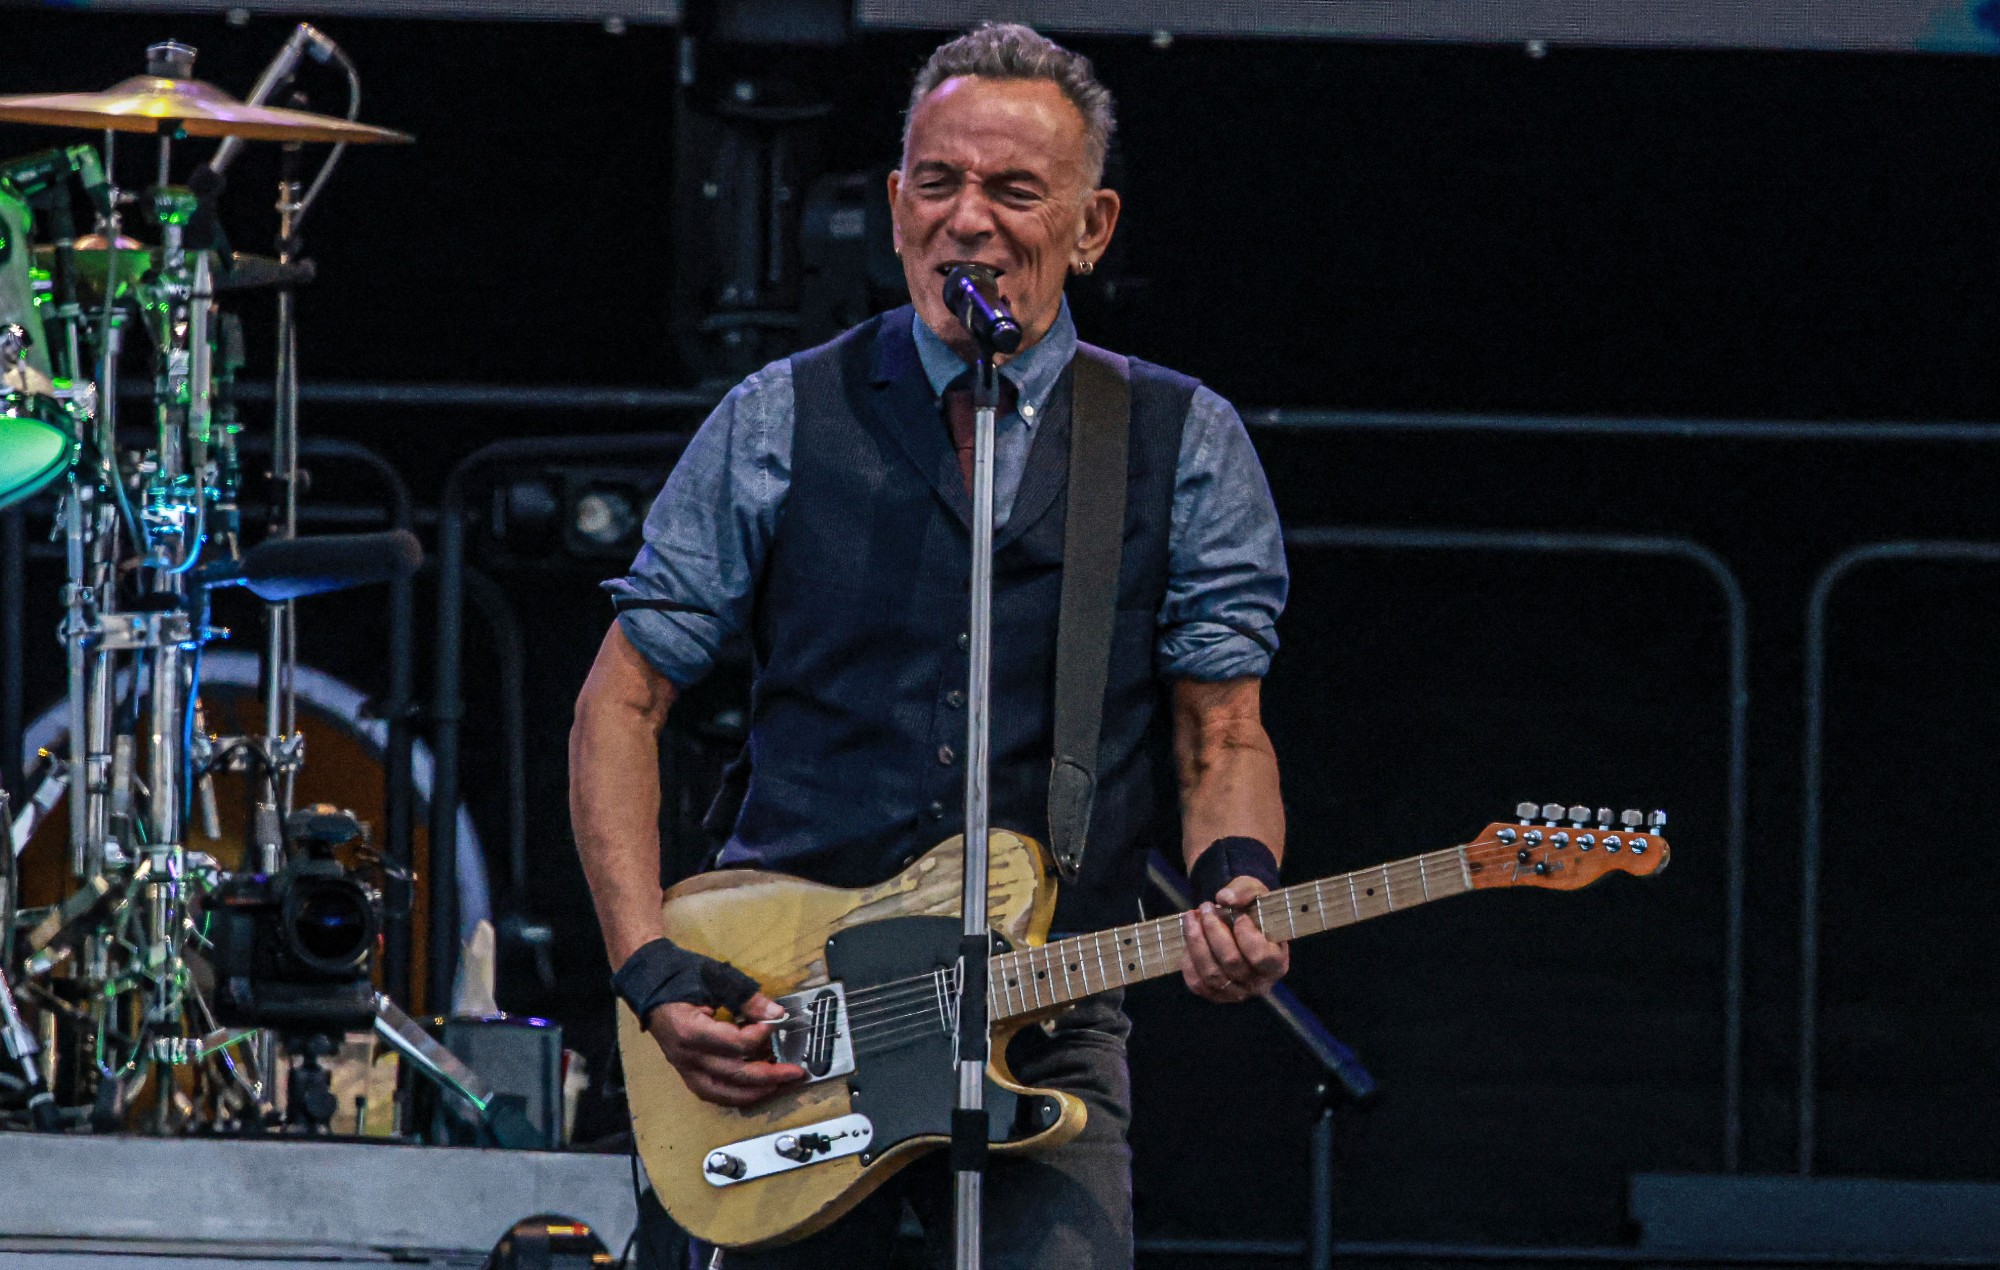 Un documental sobre el concierto de Bruce Springsteen llegará a Disney+ a finales de año